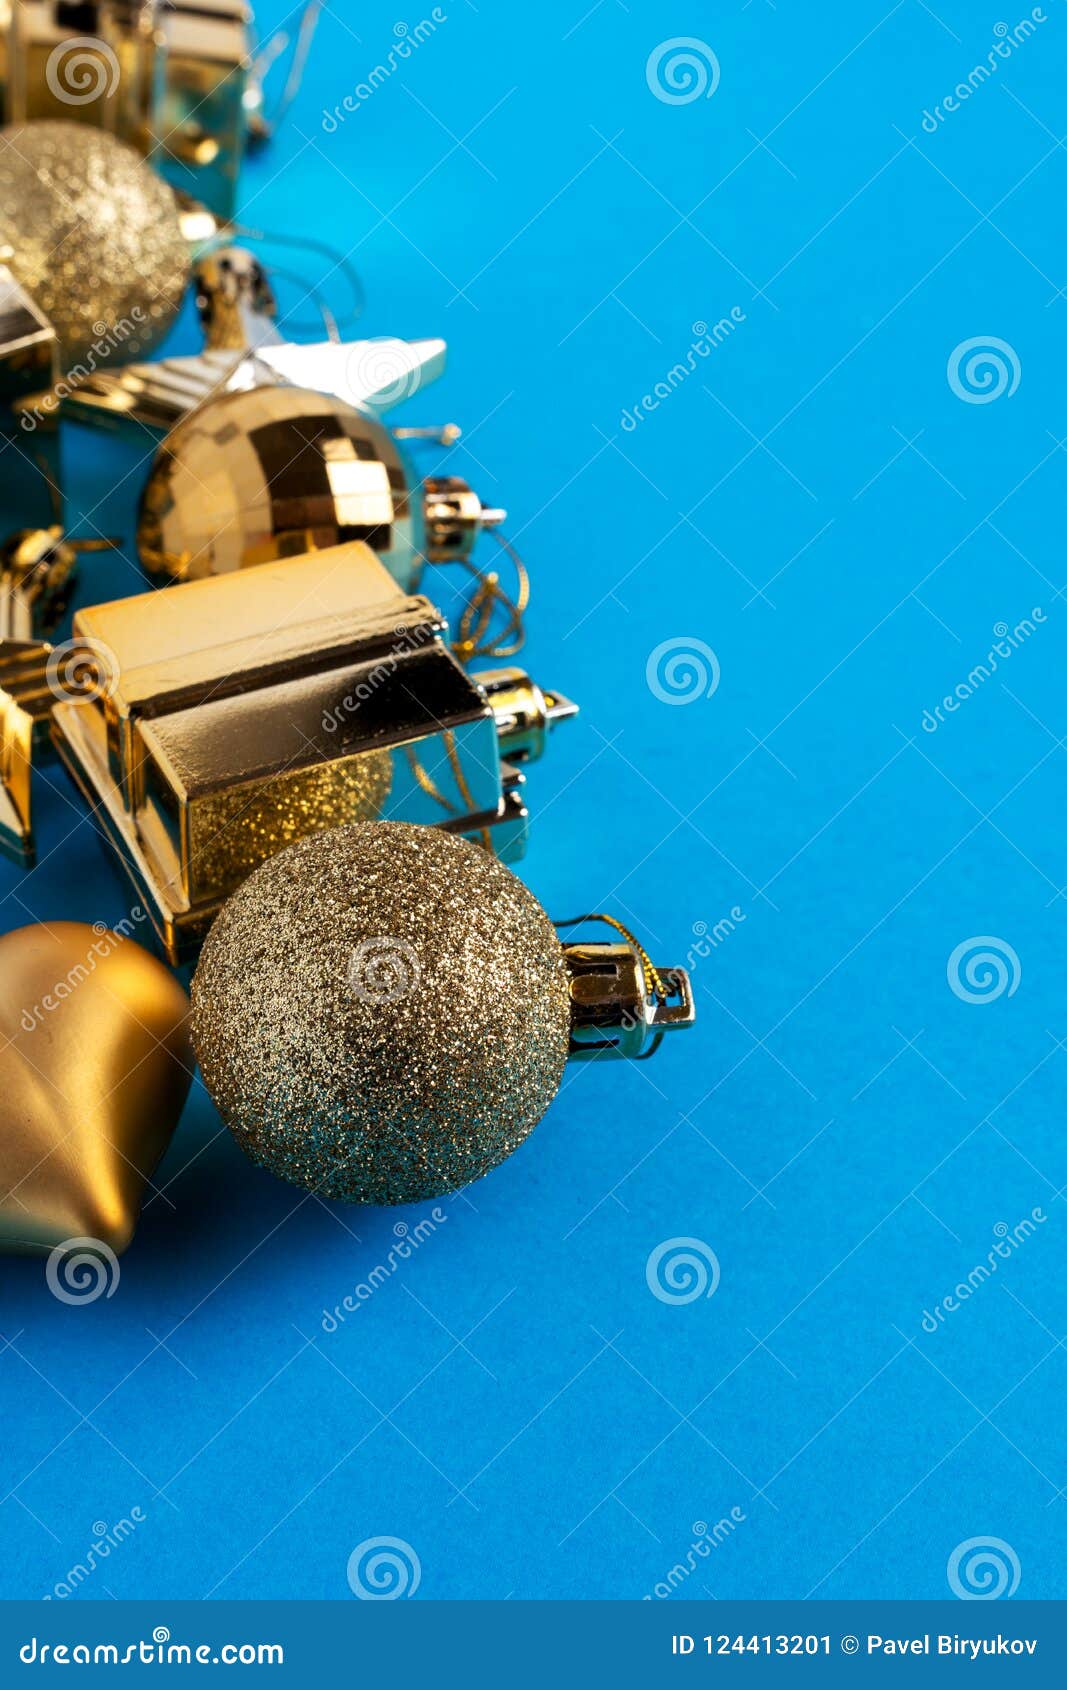 Christmas Decoration Toys on Blue Background Stock Image - Image of ...